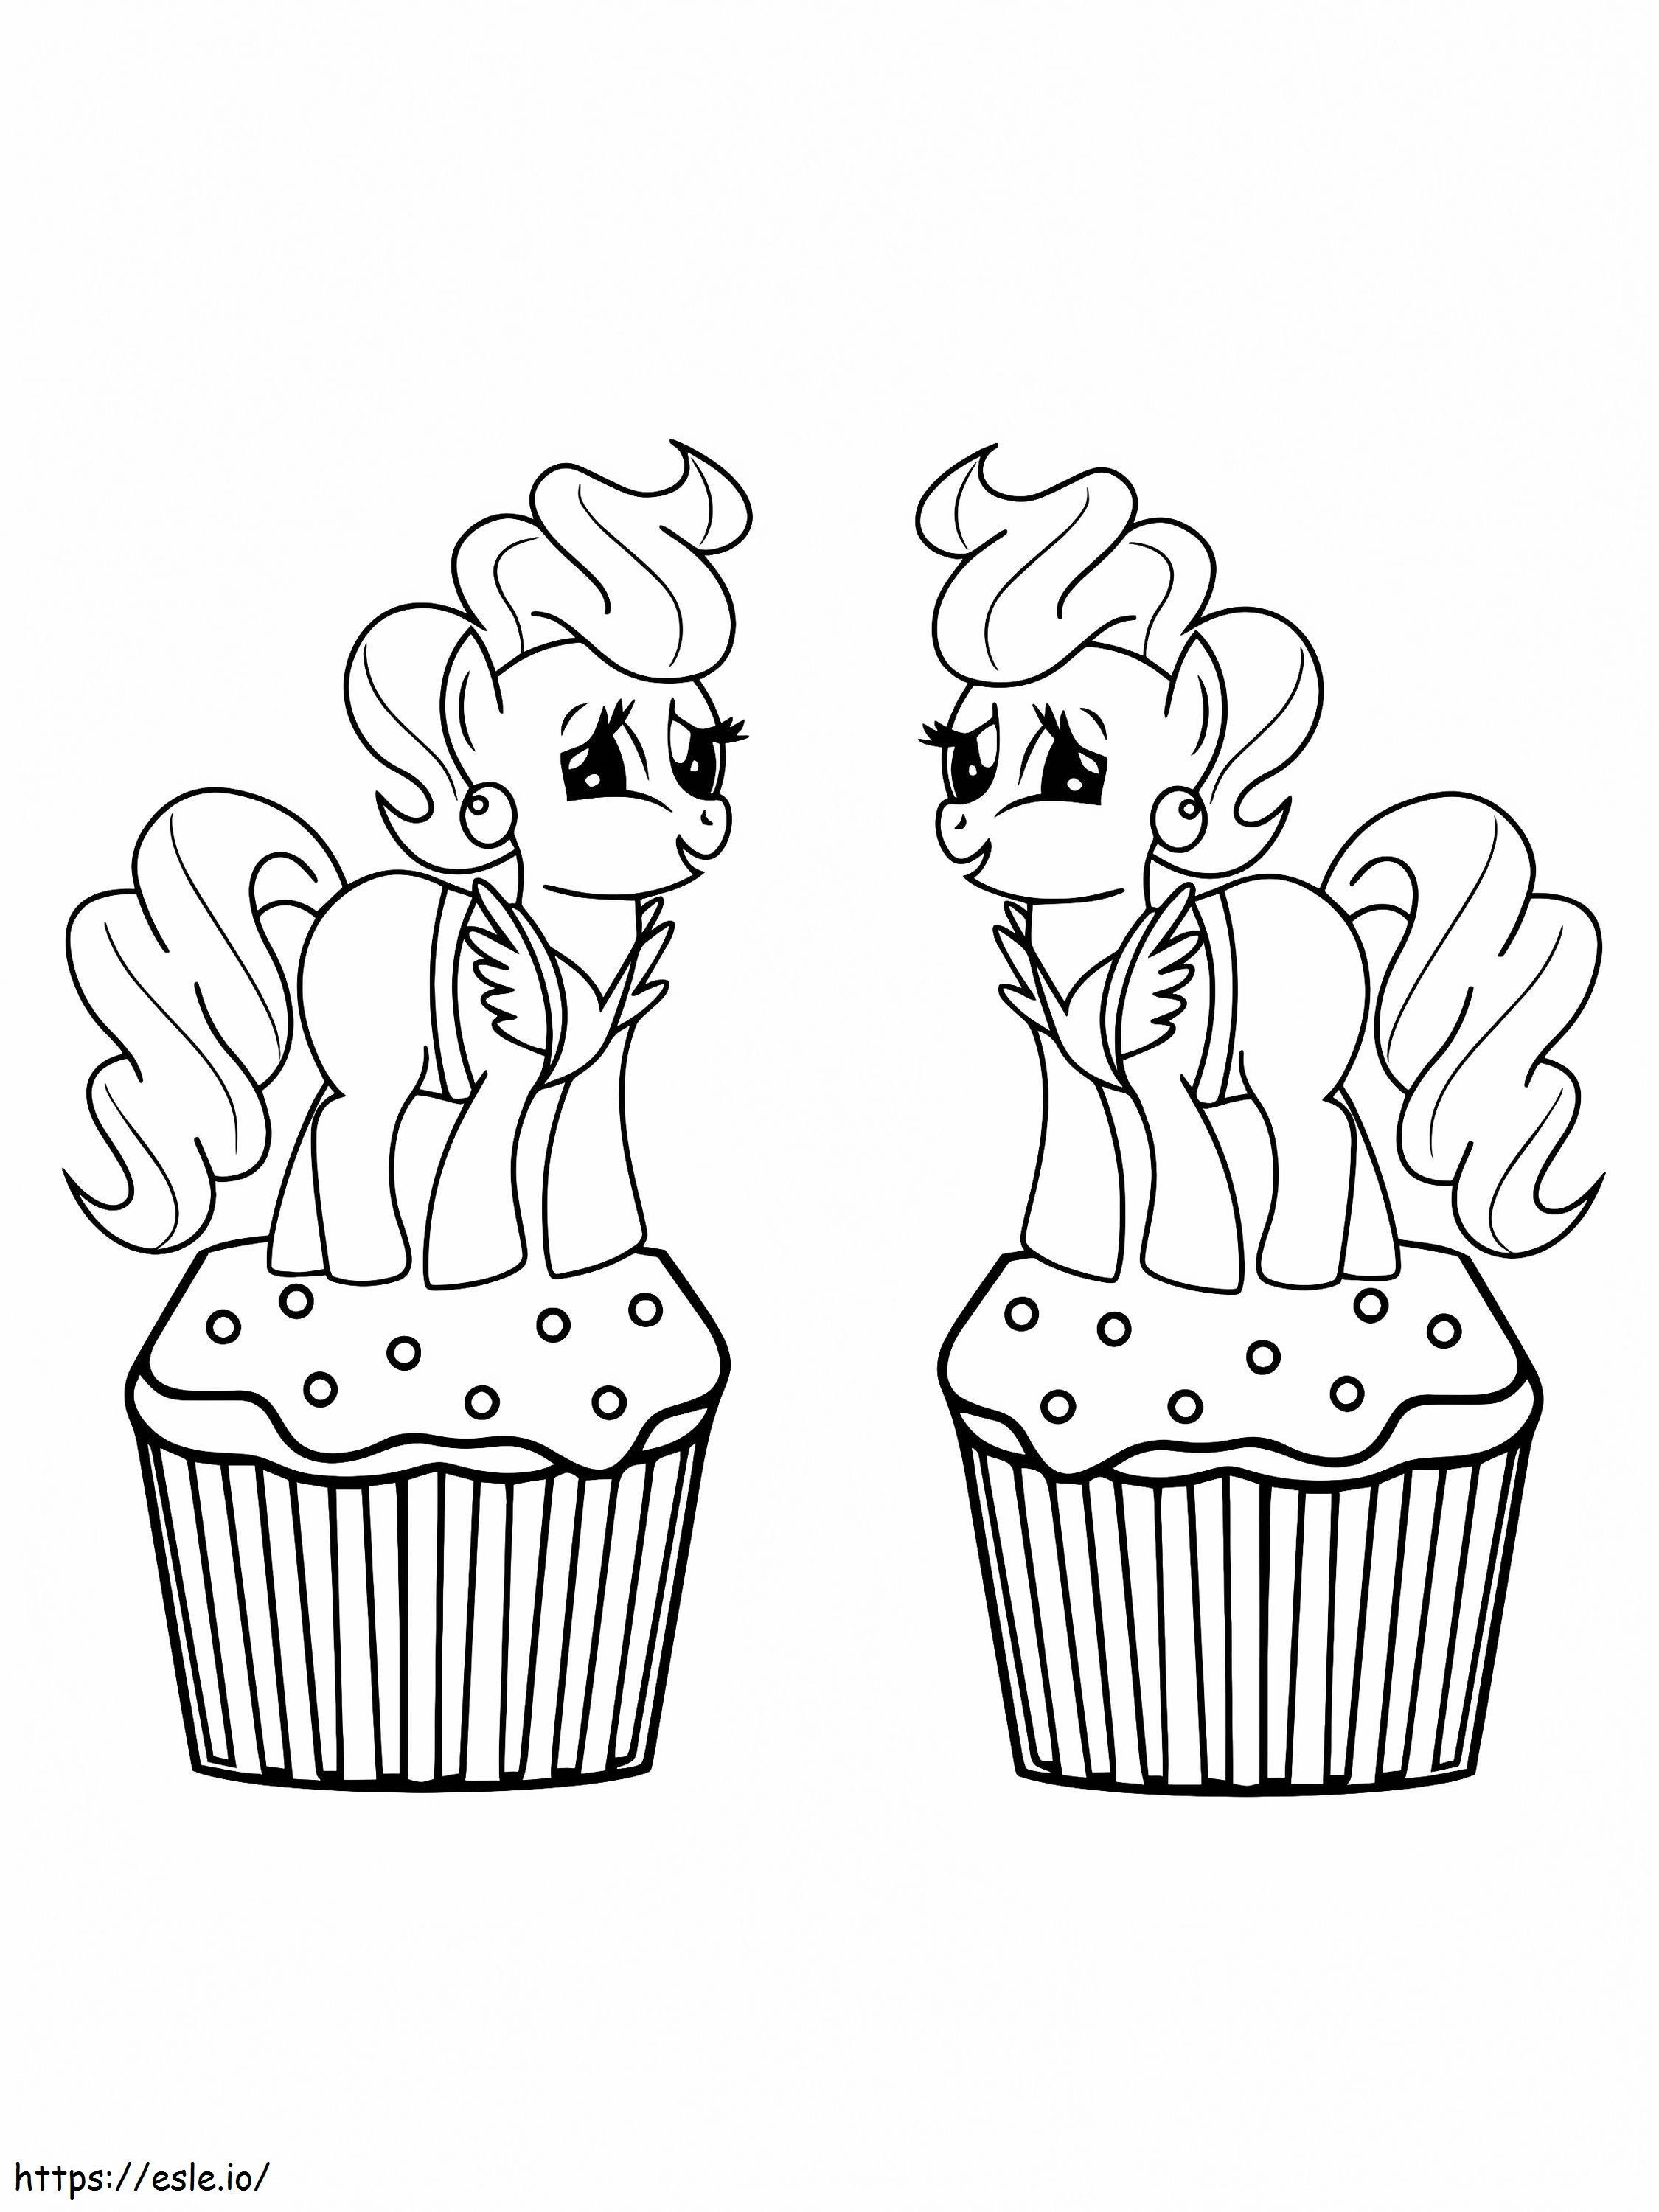 Duas Sra. Bolo Nos Cupcakes para colorir